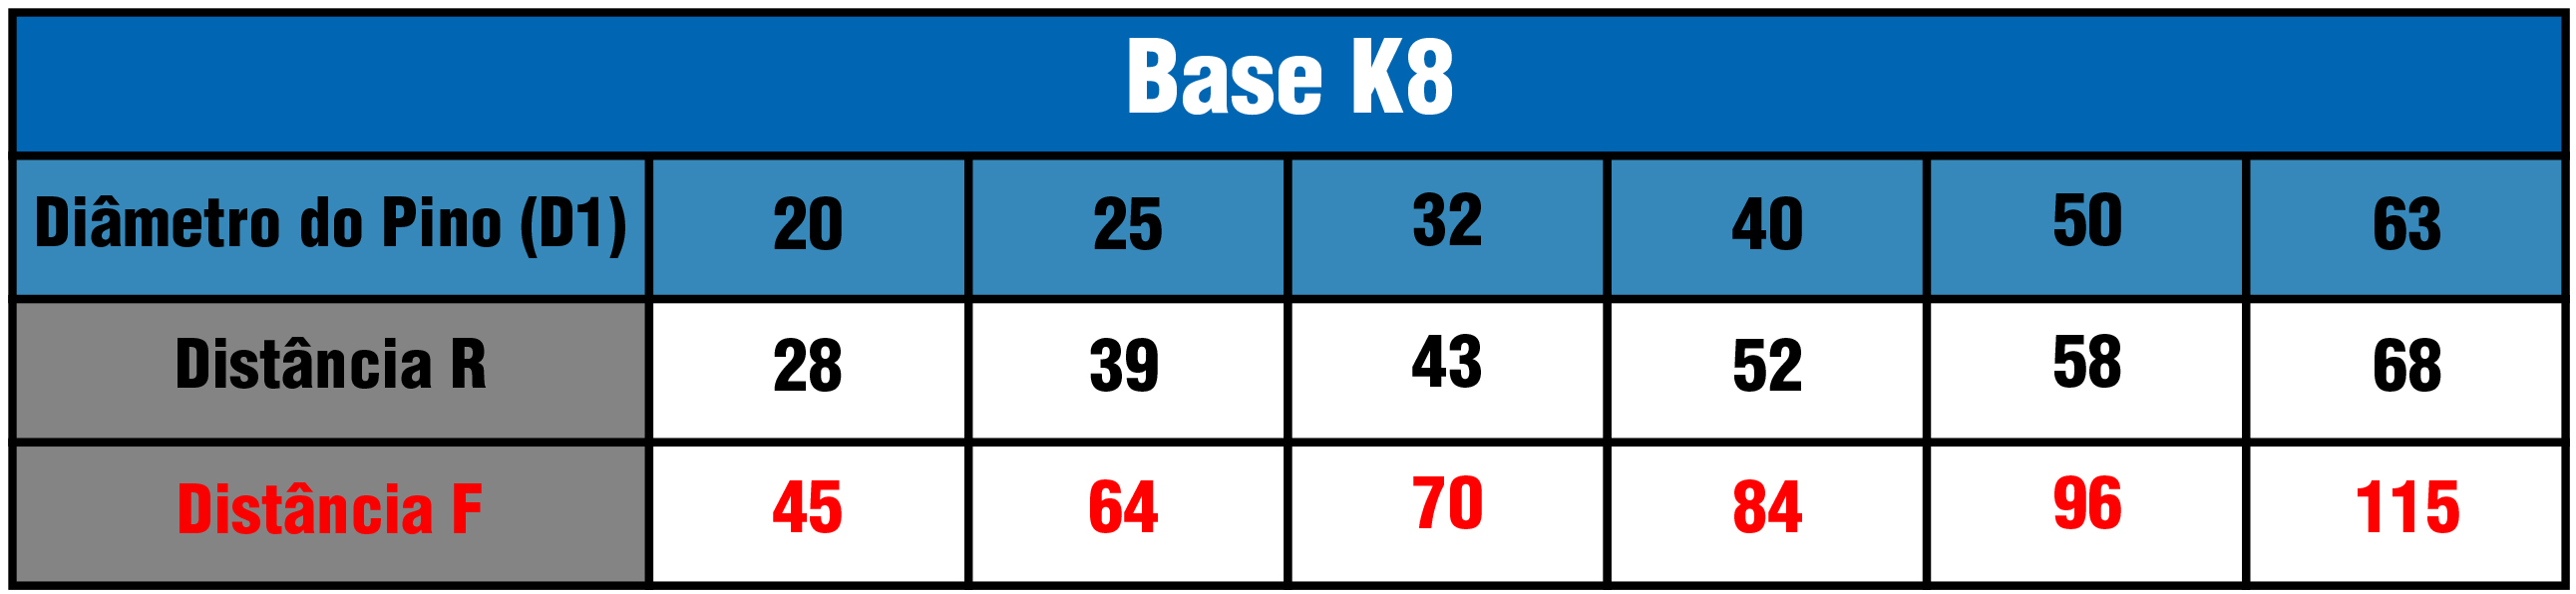 Tabela Base K8